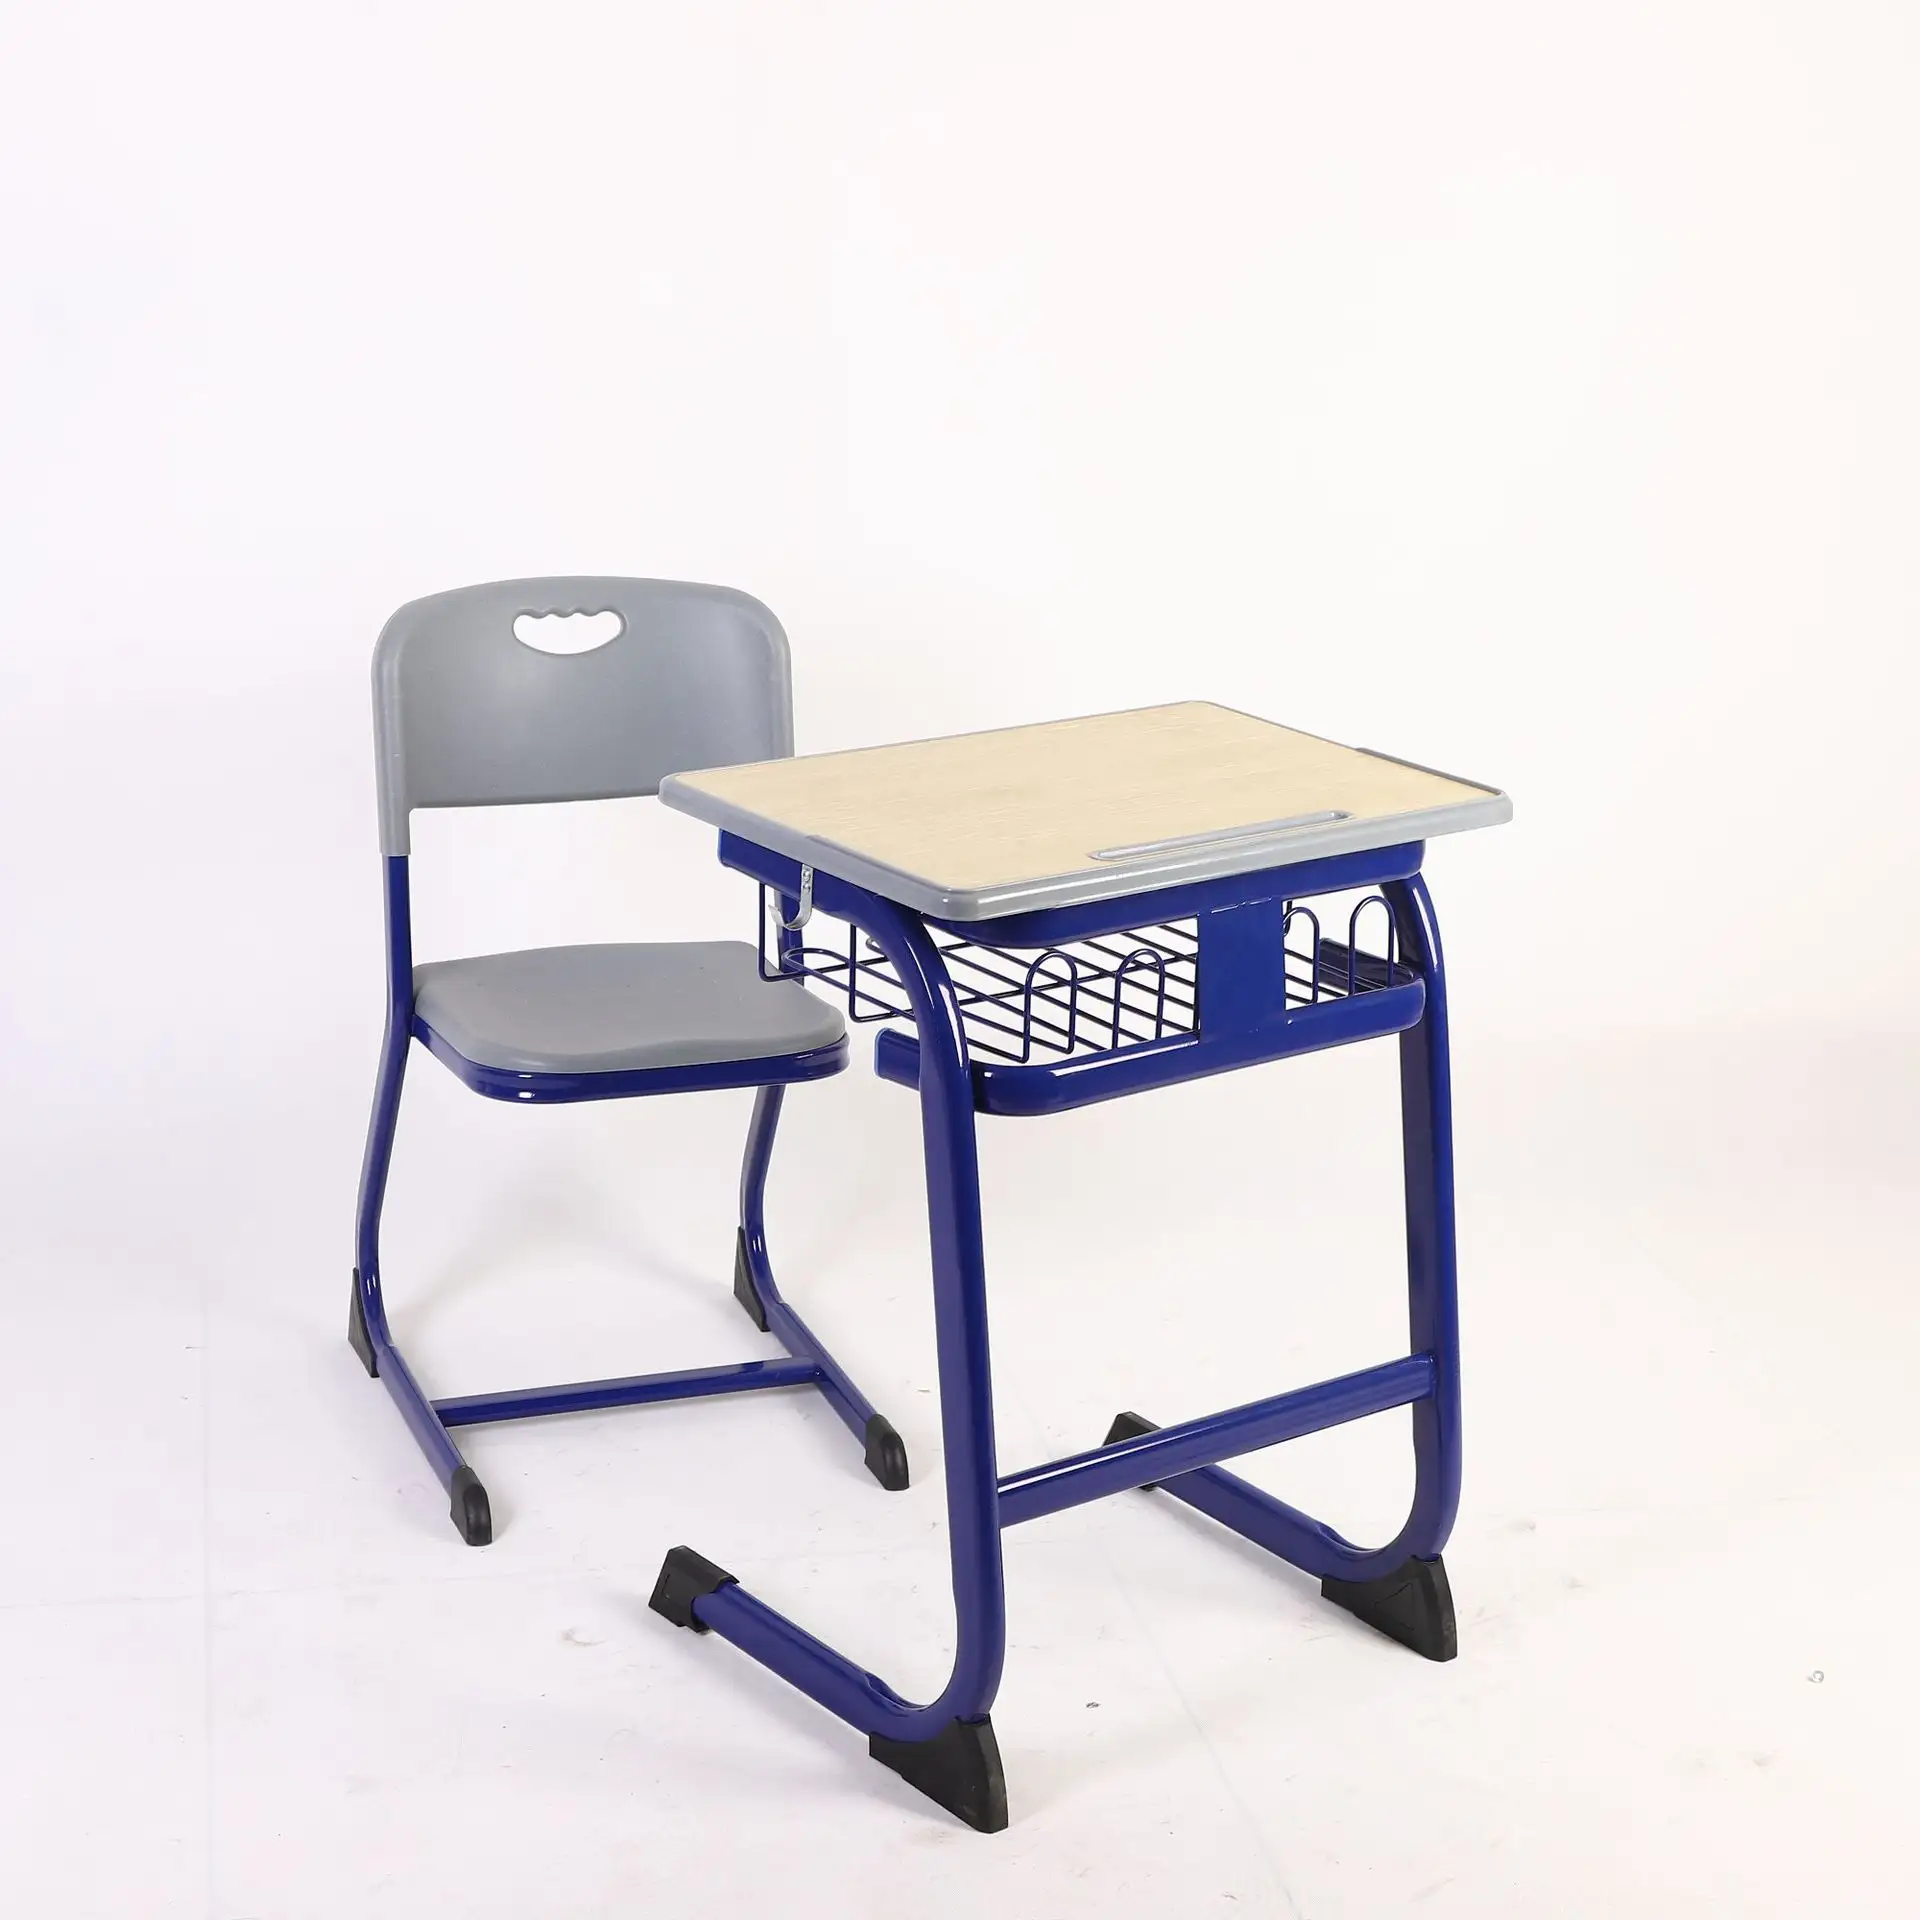 Yüksek kalite güçlü dayanıklı okul sınıf öğrenci tek masa ve sandalye seti çalışma için ahşap okul mobilyaları